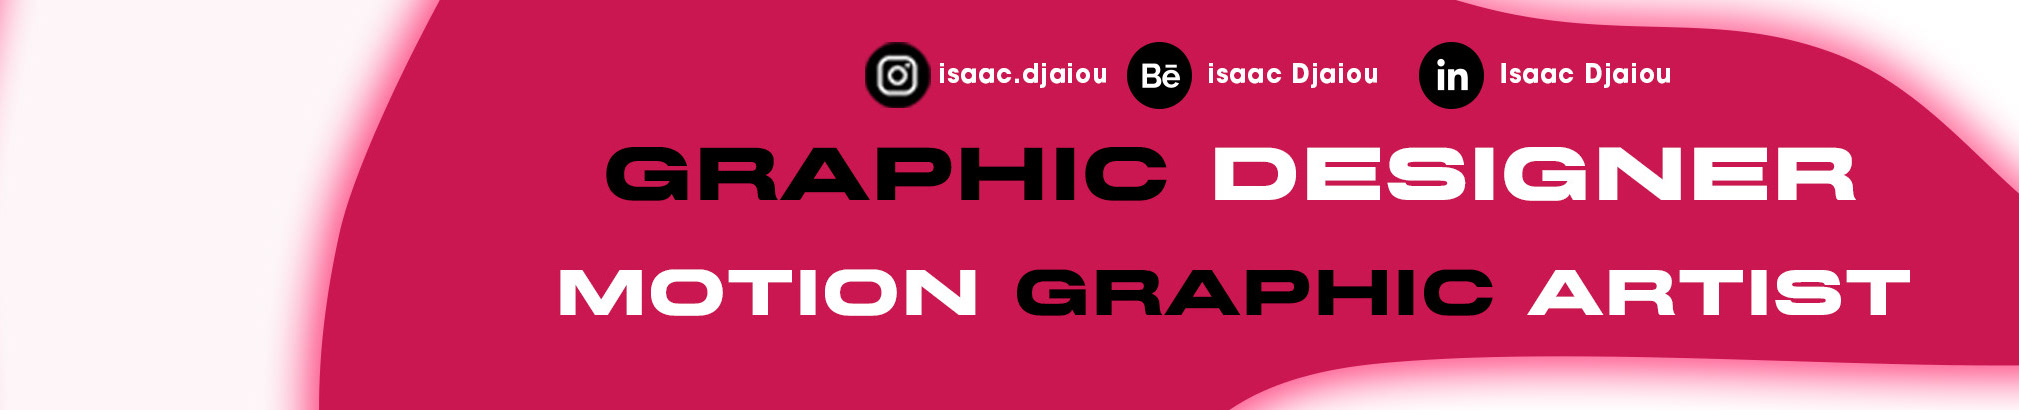 isaac Djaiou's profile banner